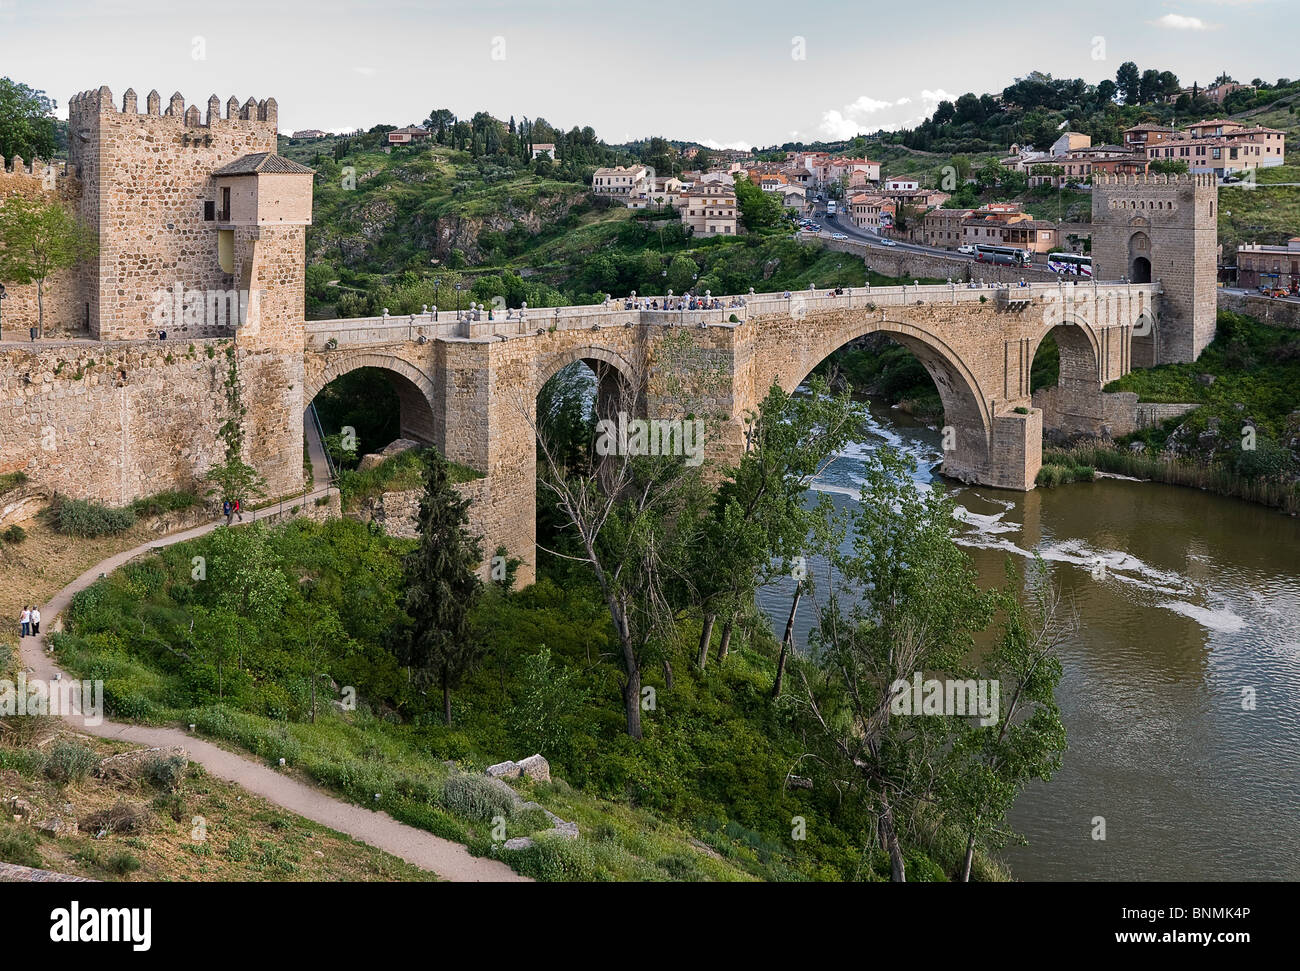 Pont médiéval San Martin, à partir du 14e siècle en pierre, traverse le tage dans la ville de Tolède, Castille la Manche, Espagne, Europe. Banque D'Images